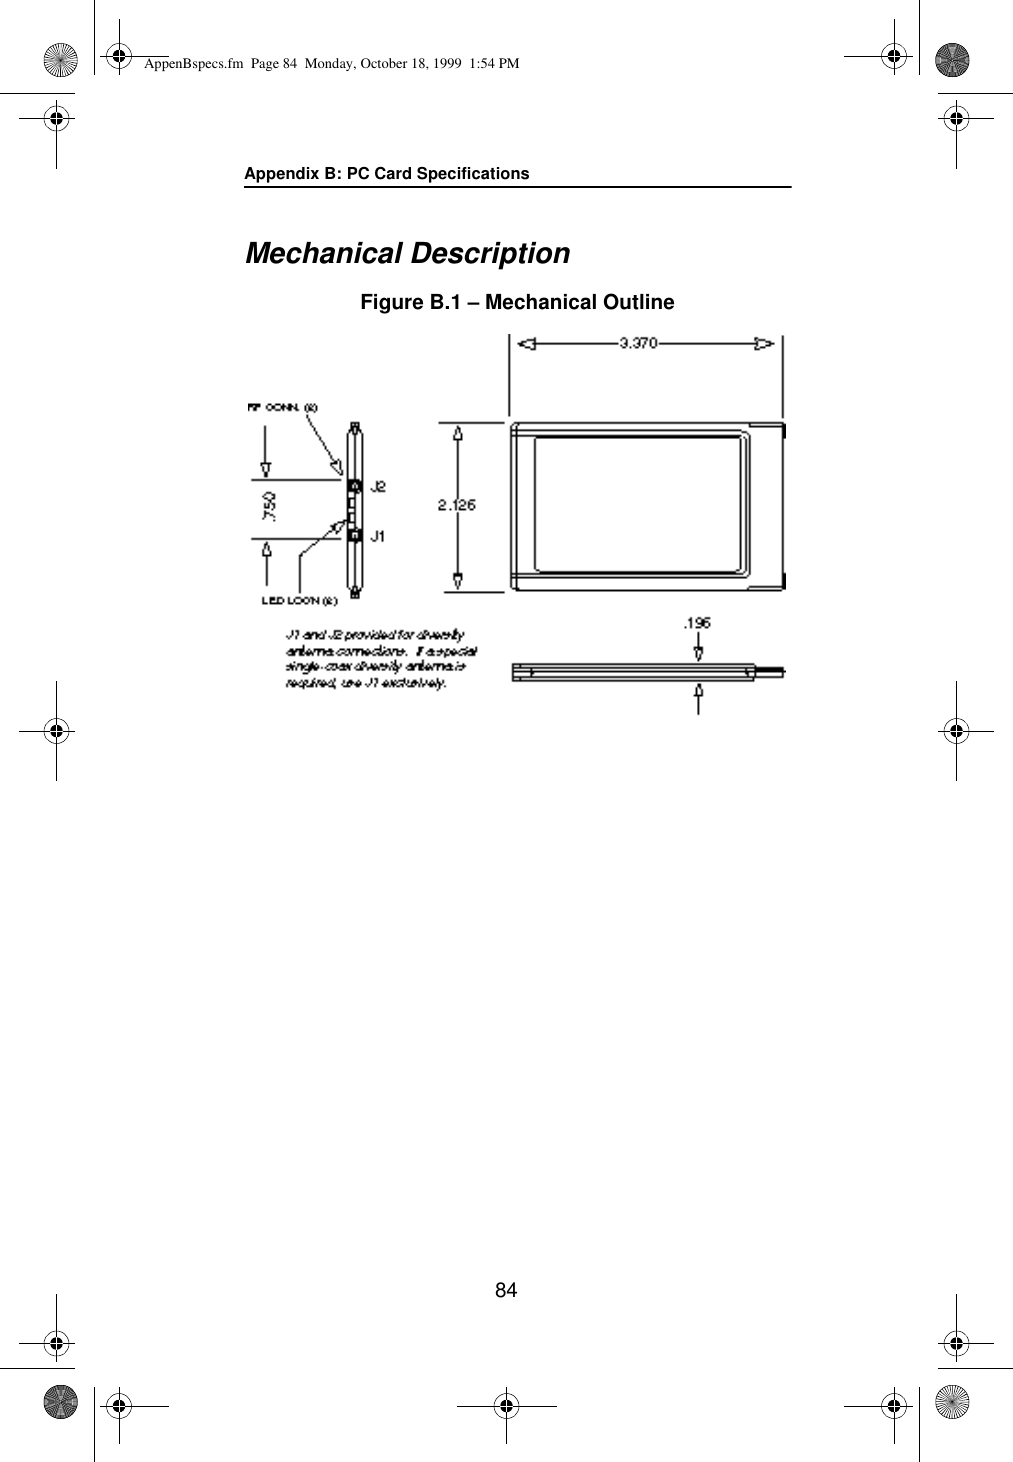 Appendix B: PC Card Specifications84Mechanical DescriptionFigure B.1 – Mechanical OutlineAppenBspecs.fm  Page 84  Monday, October 18, 1999  1:54 PM